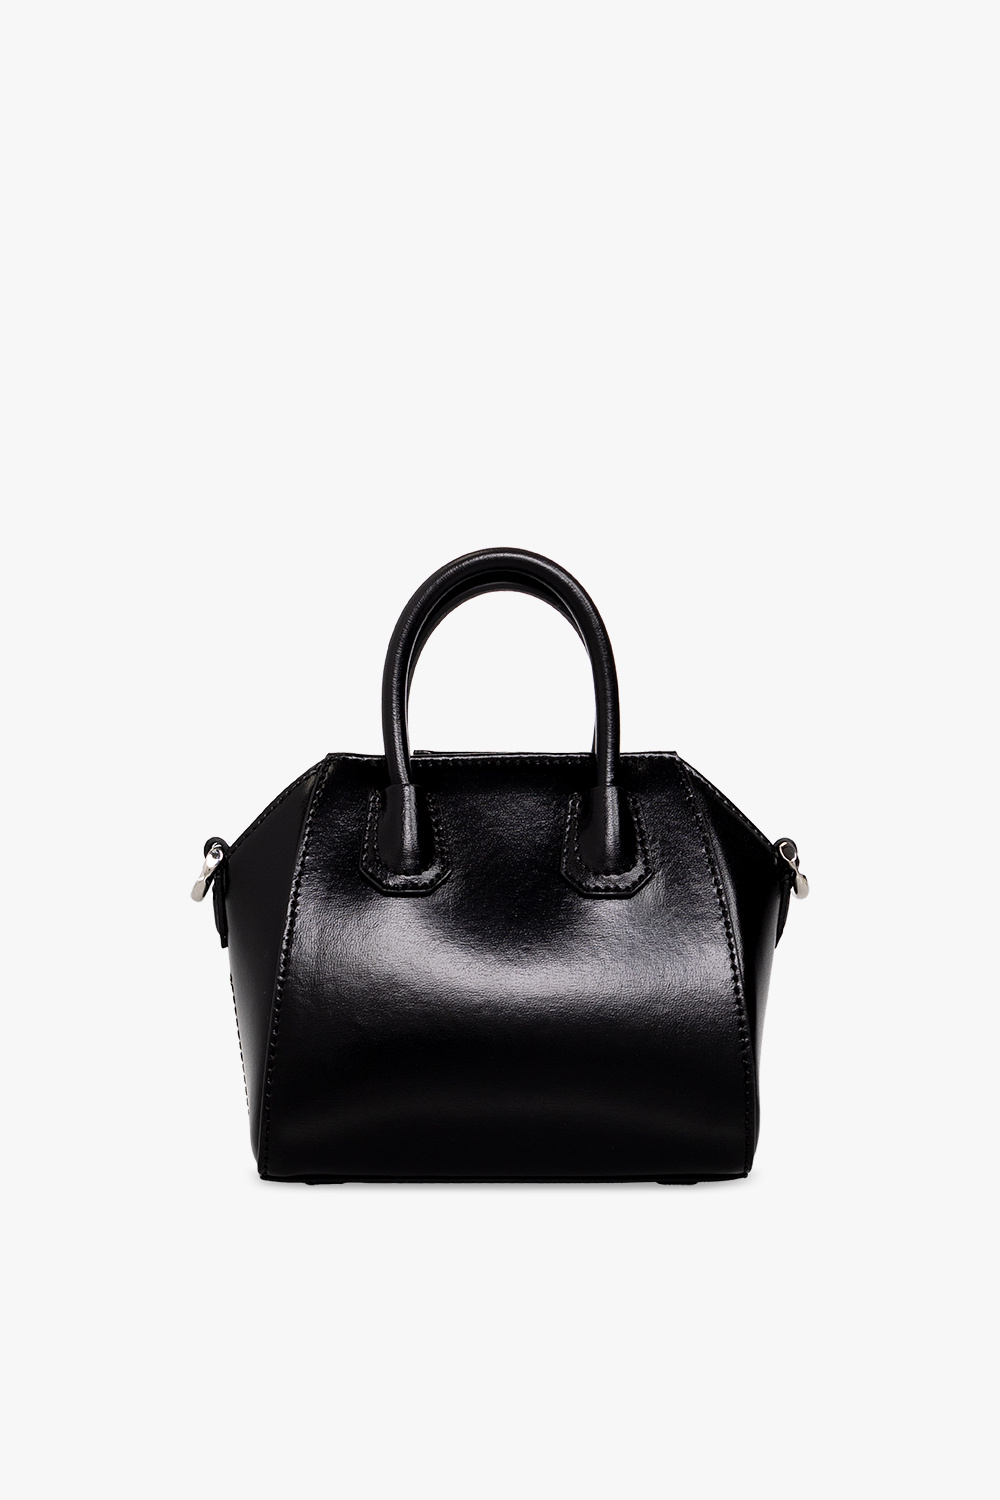 Givenchy ‘Antigona Micro’ shoulder bag